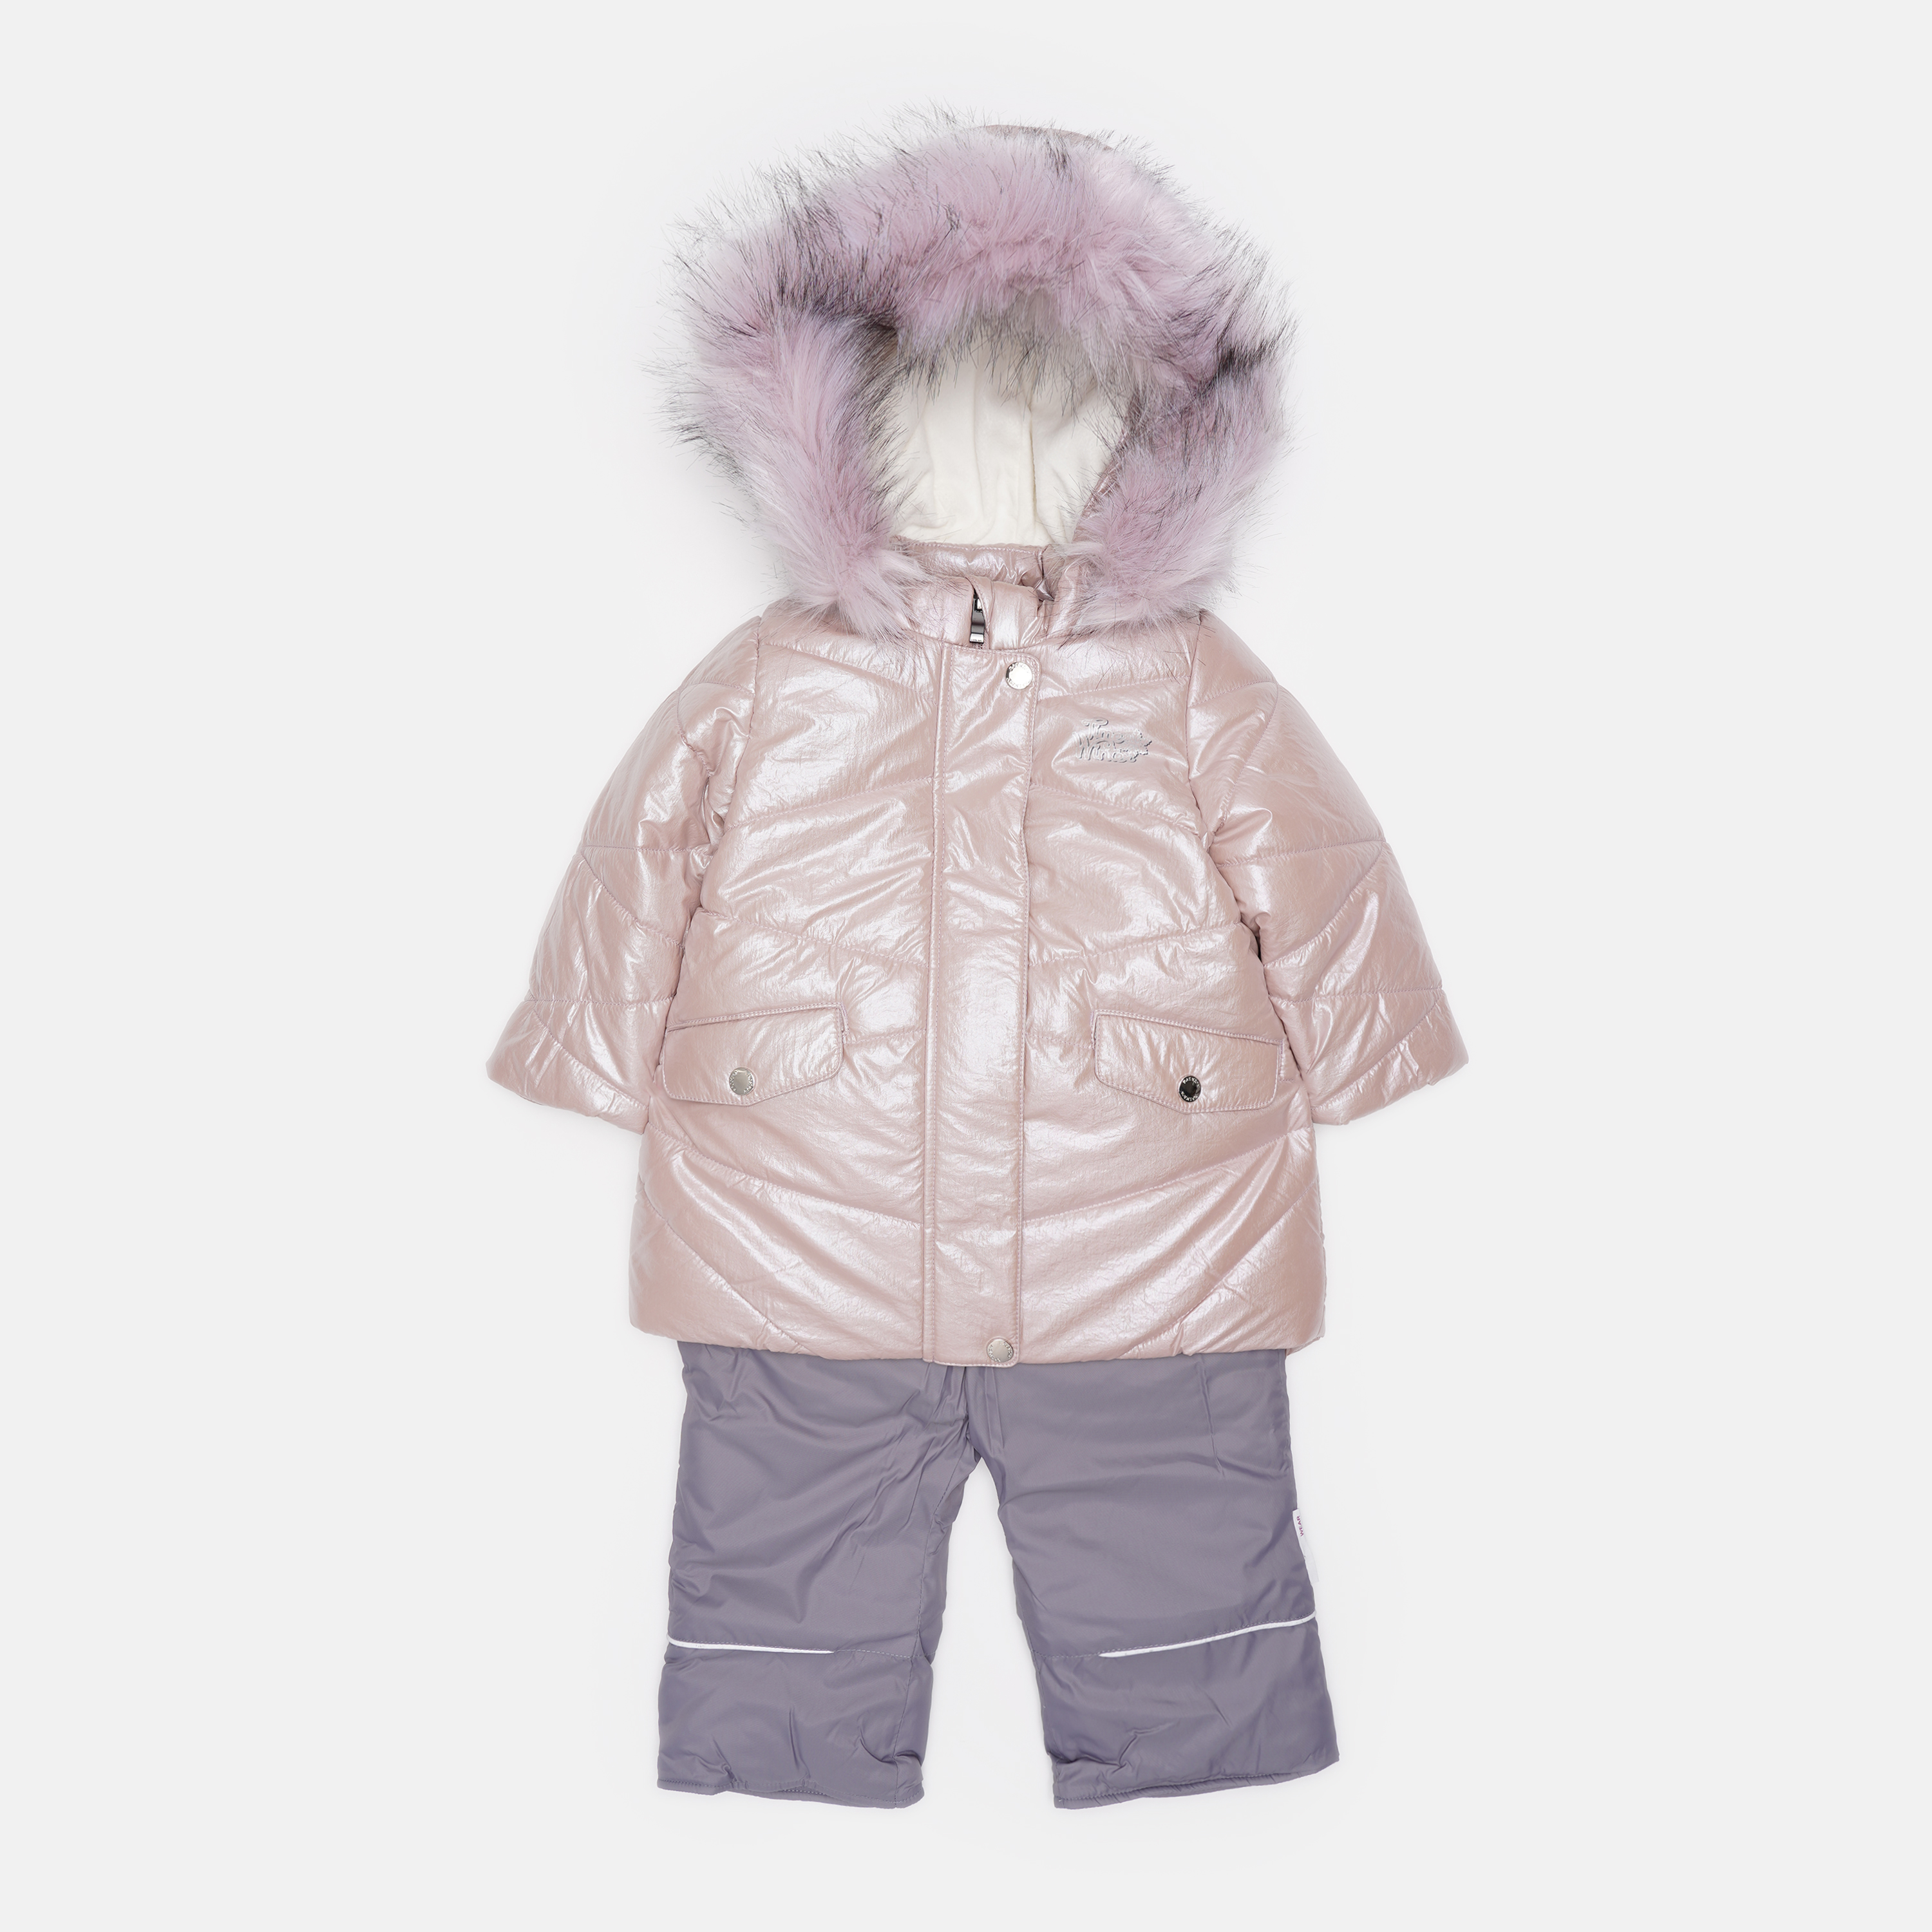 Акция на Зимний комплект (куртка + полукомбинезон) Evolution 30-ЗД-19 80 см Перламутровый розовый/Серый (4823078564870) от Rozetka UA